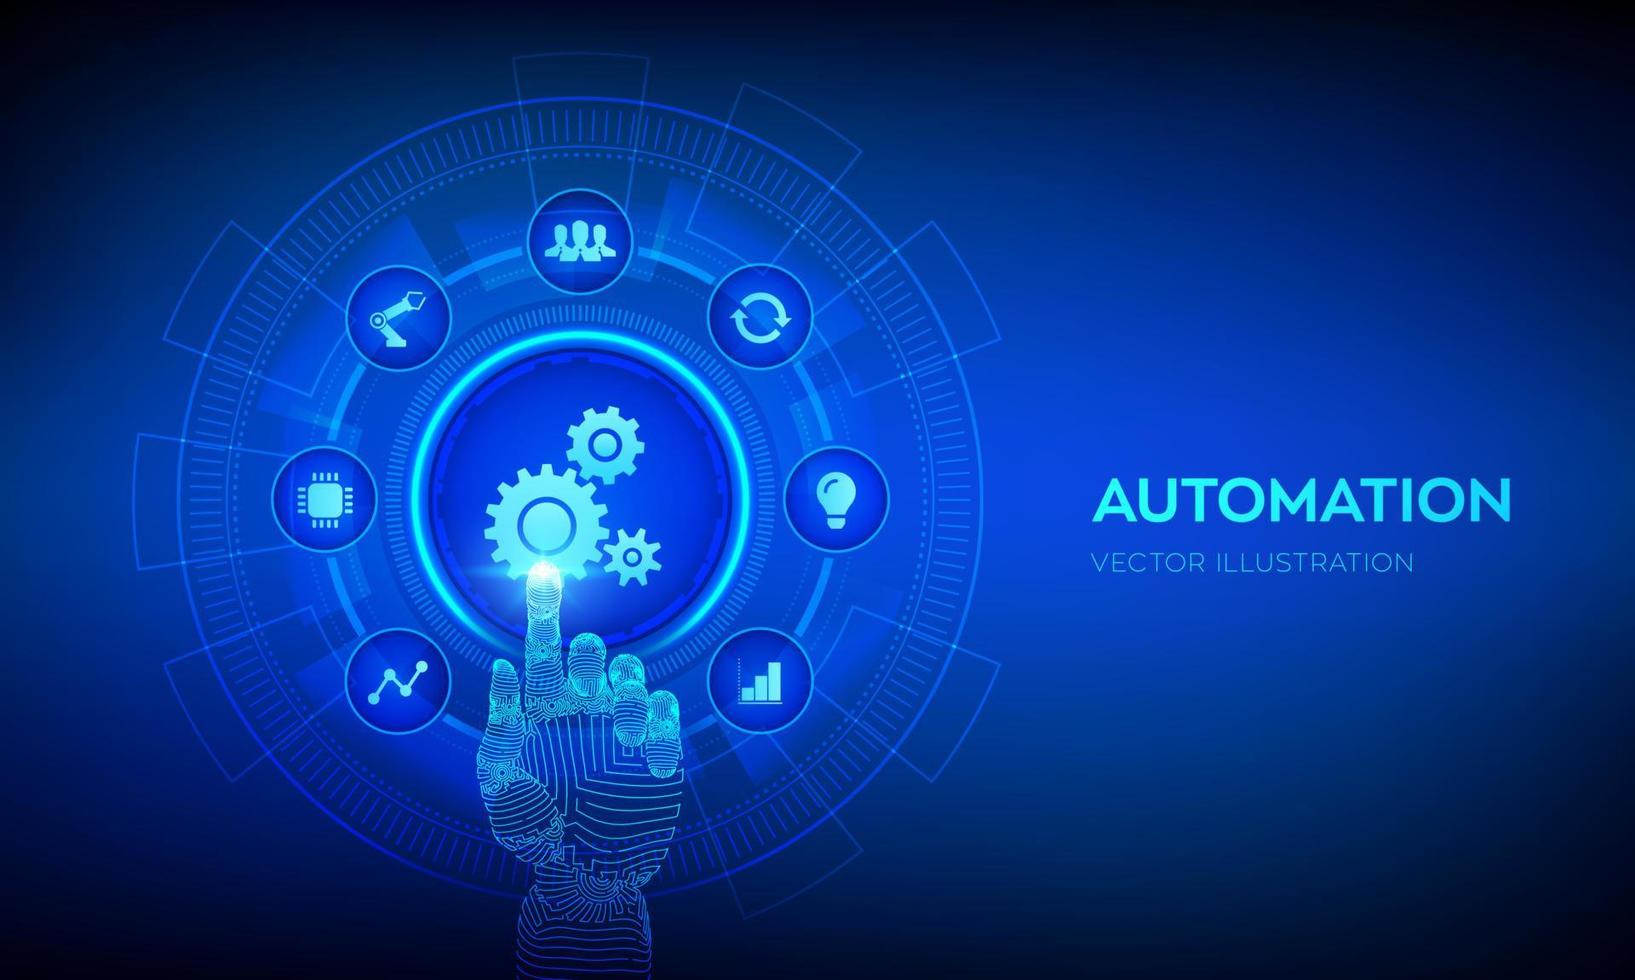 automationsprogramvara. iot och automationskoncept som en innovation som förbättrar produktiviteten inom teknik och affärsprocesser. robothand som rör vid digitalt gränssnitt. vektor illustration.